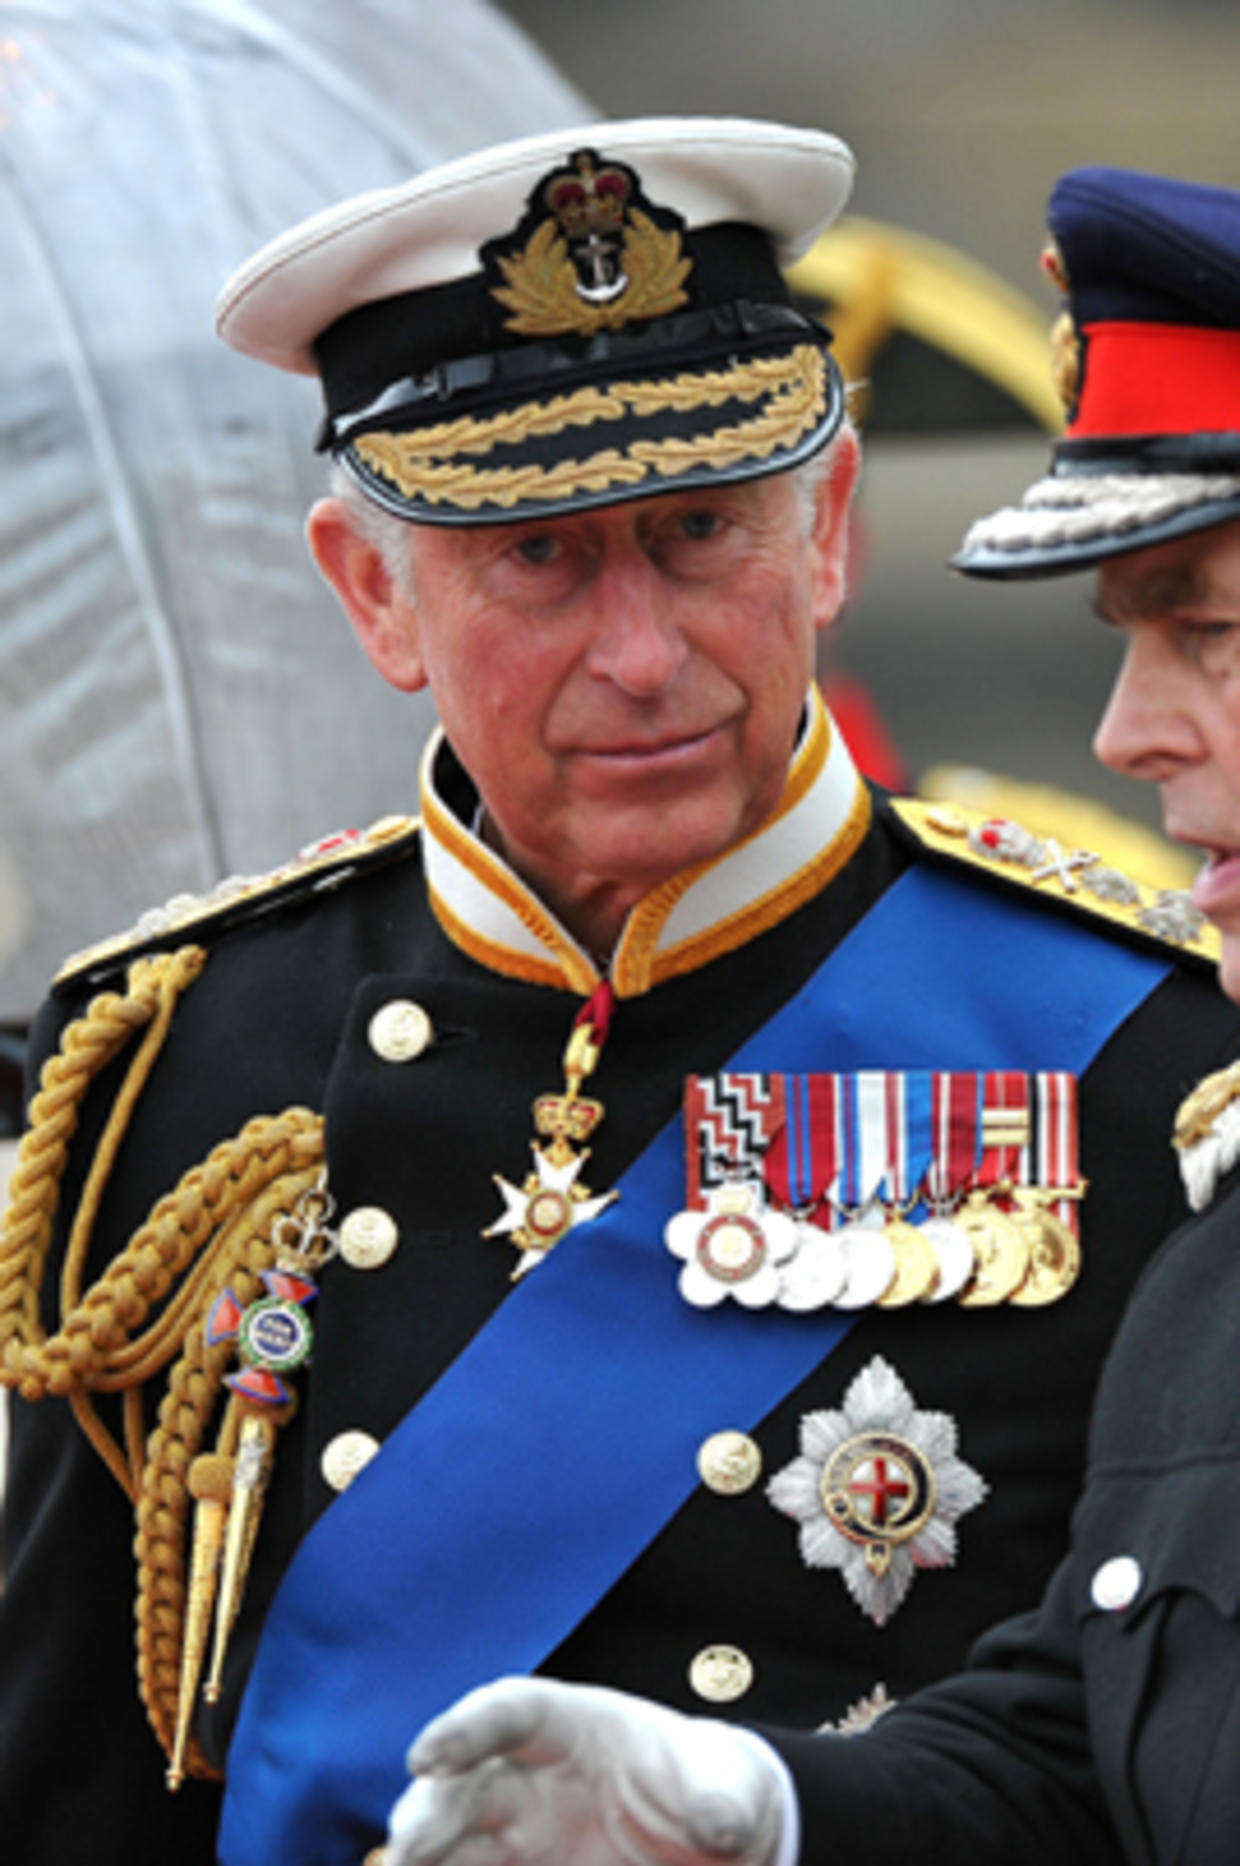 Royals celebrate Queen's Diamond Jubilee